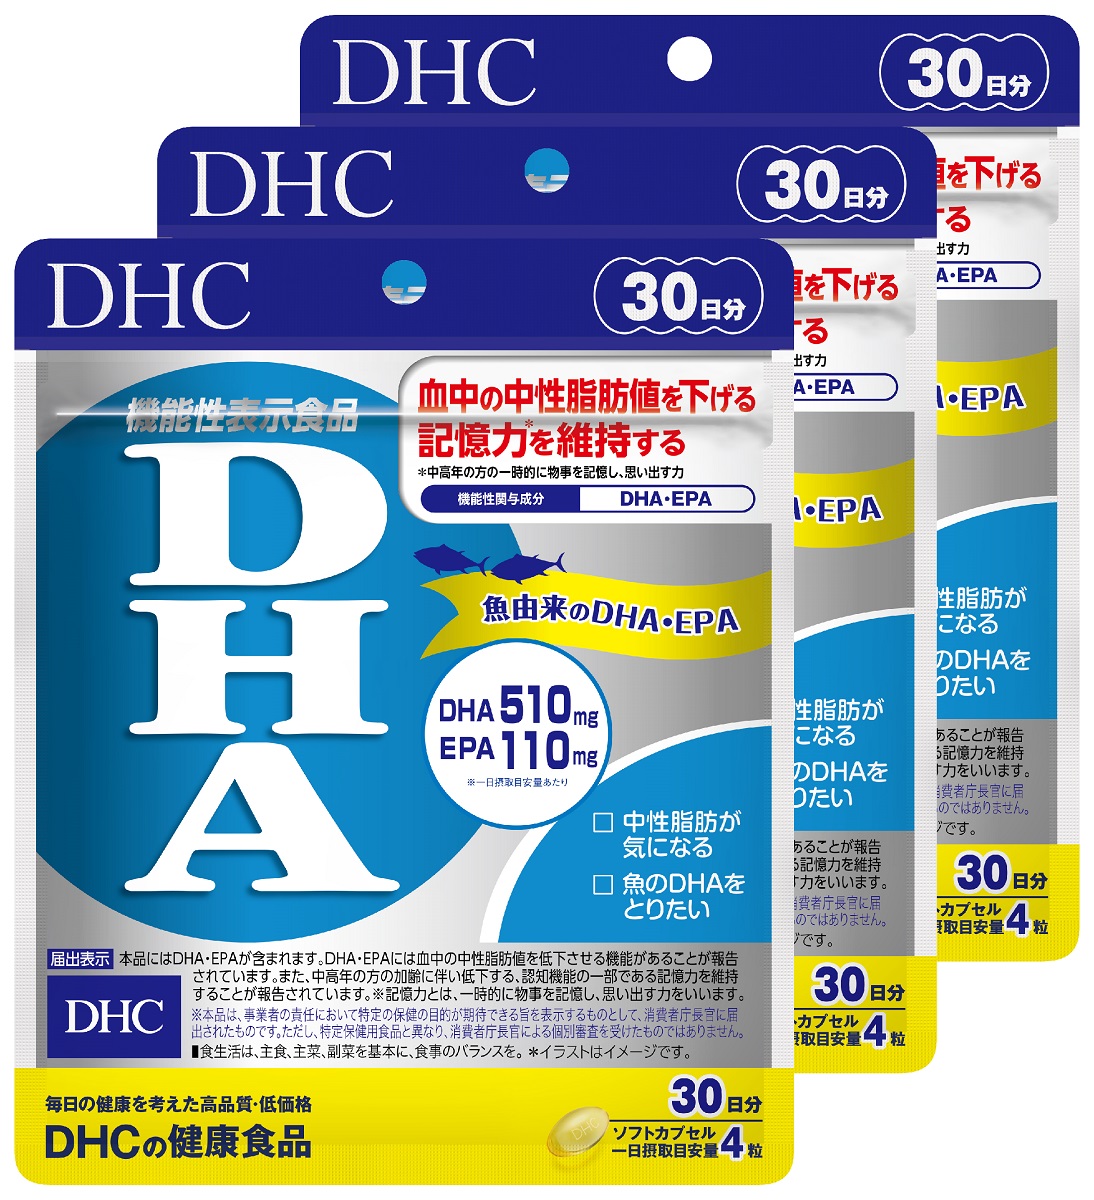 血中の中性脂肪値を低下させる 魚由来のDHA EPA配合のサプリメントです ふるさと納税 DHC 機能性表示食品 サプリメント DHA 種類豊富な品揃え 3ヶ月分セット 登場大人気アイテム 30日分